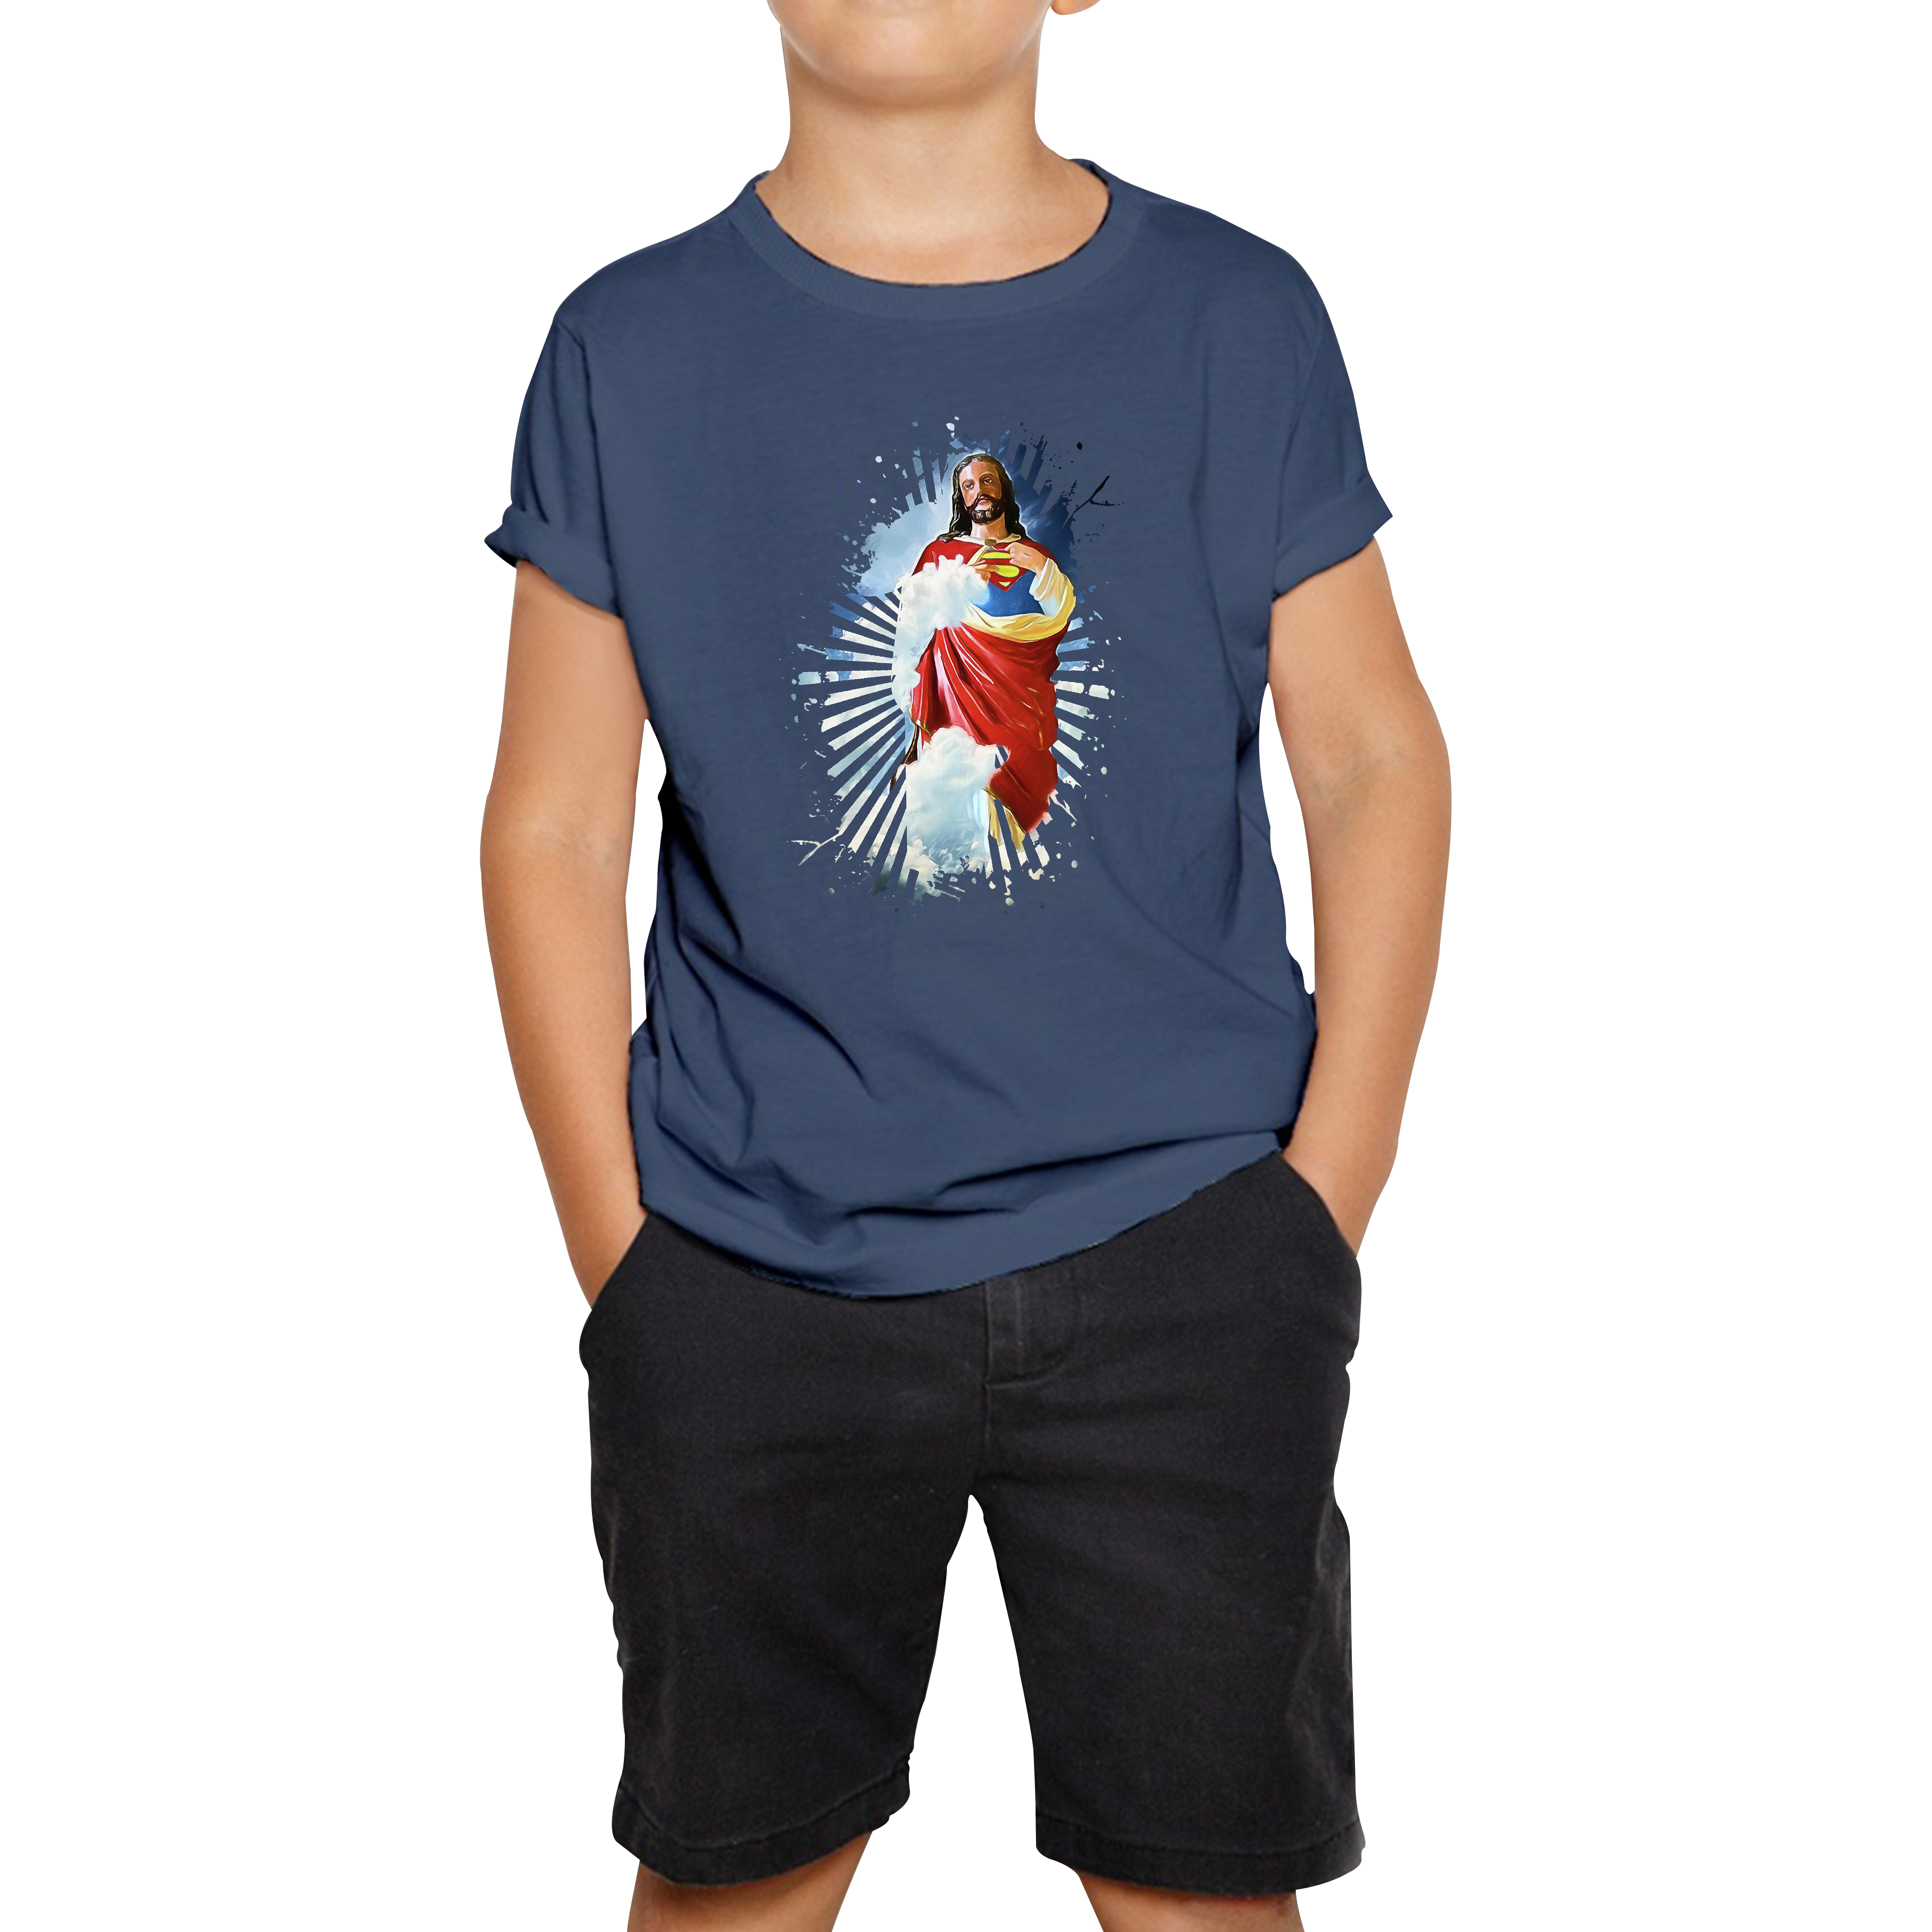 Jesus Christ Superman T-shirt Superman Inspired Spoof Avengers Superhero Christian Gift Kids Tee